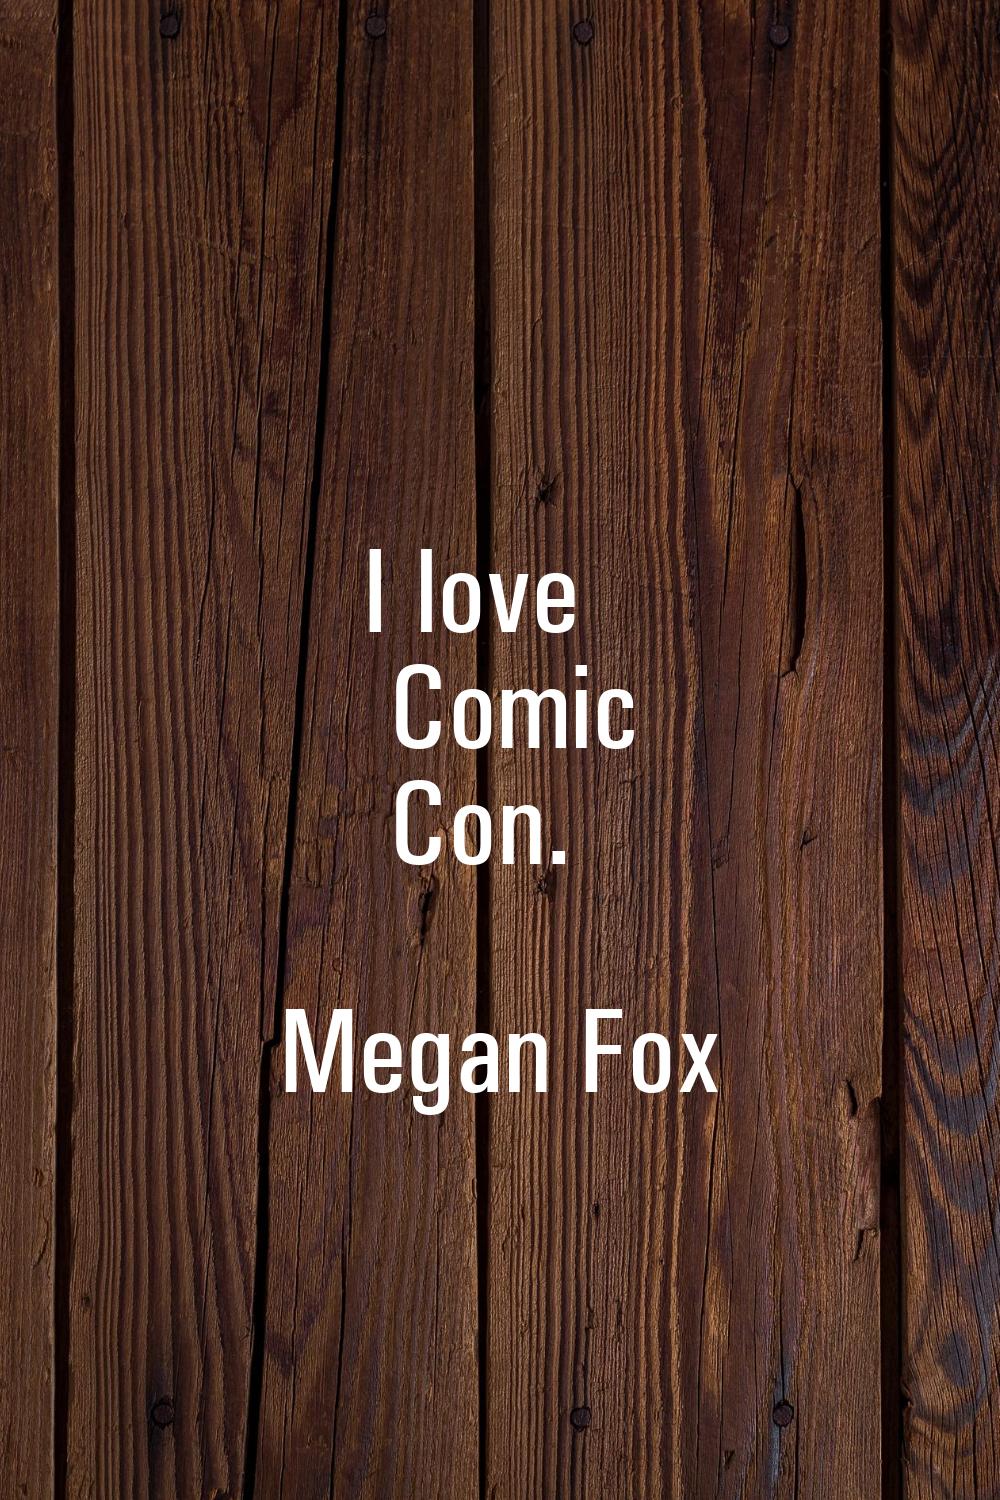 I love Comic Con.